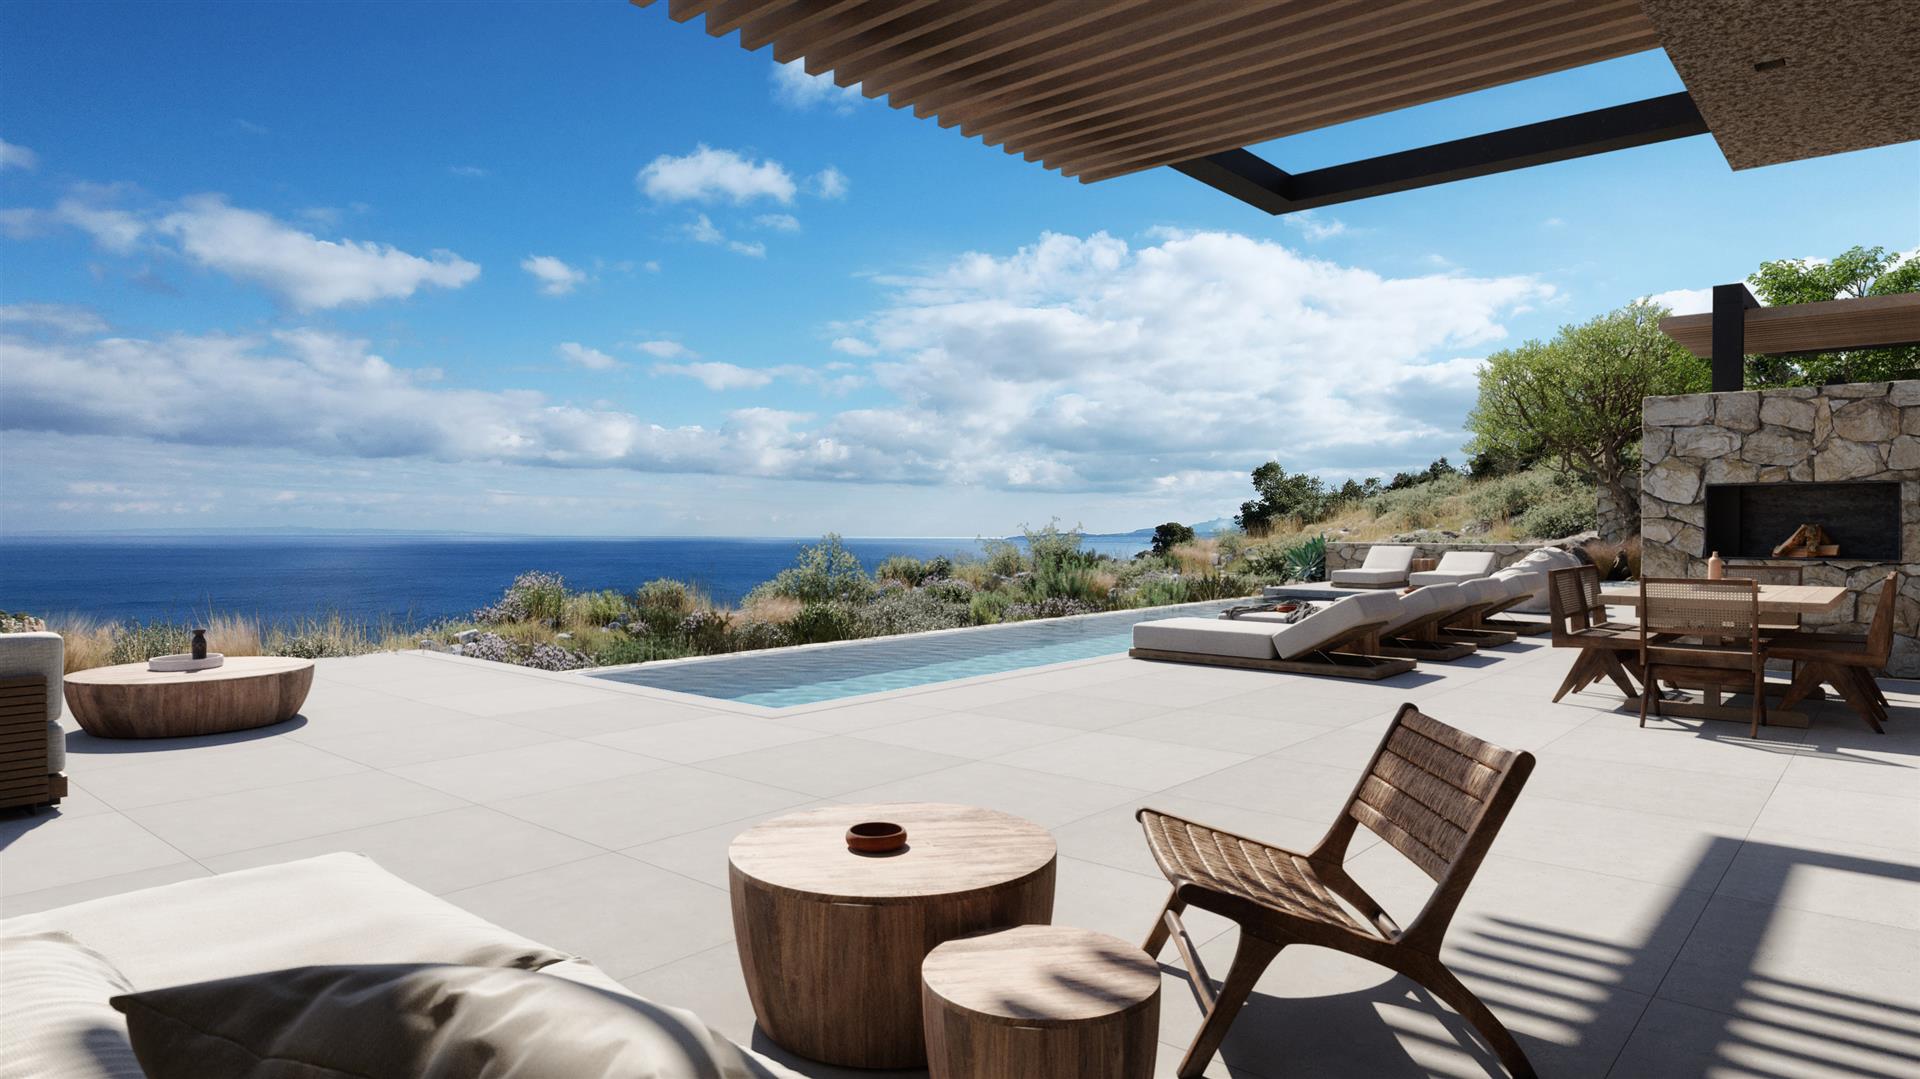 Vilă nouă magnifică cu 4 dormitoare, cu vedere uimitoare la Marea Ionică de pe insula Zakynthos Gre